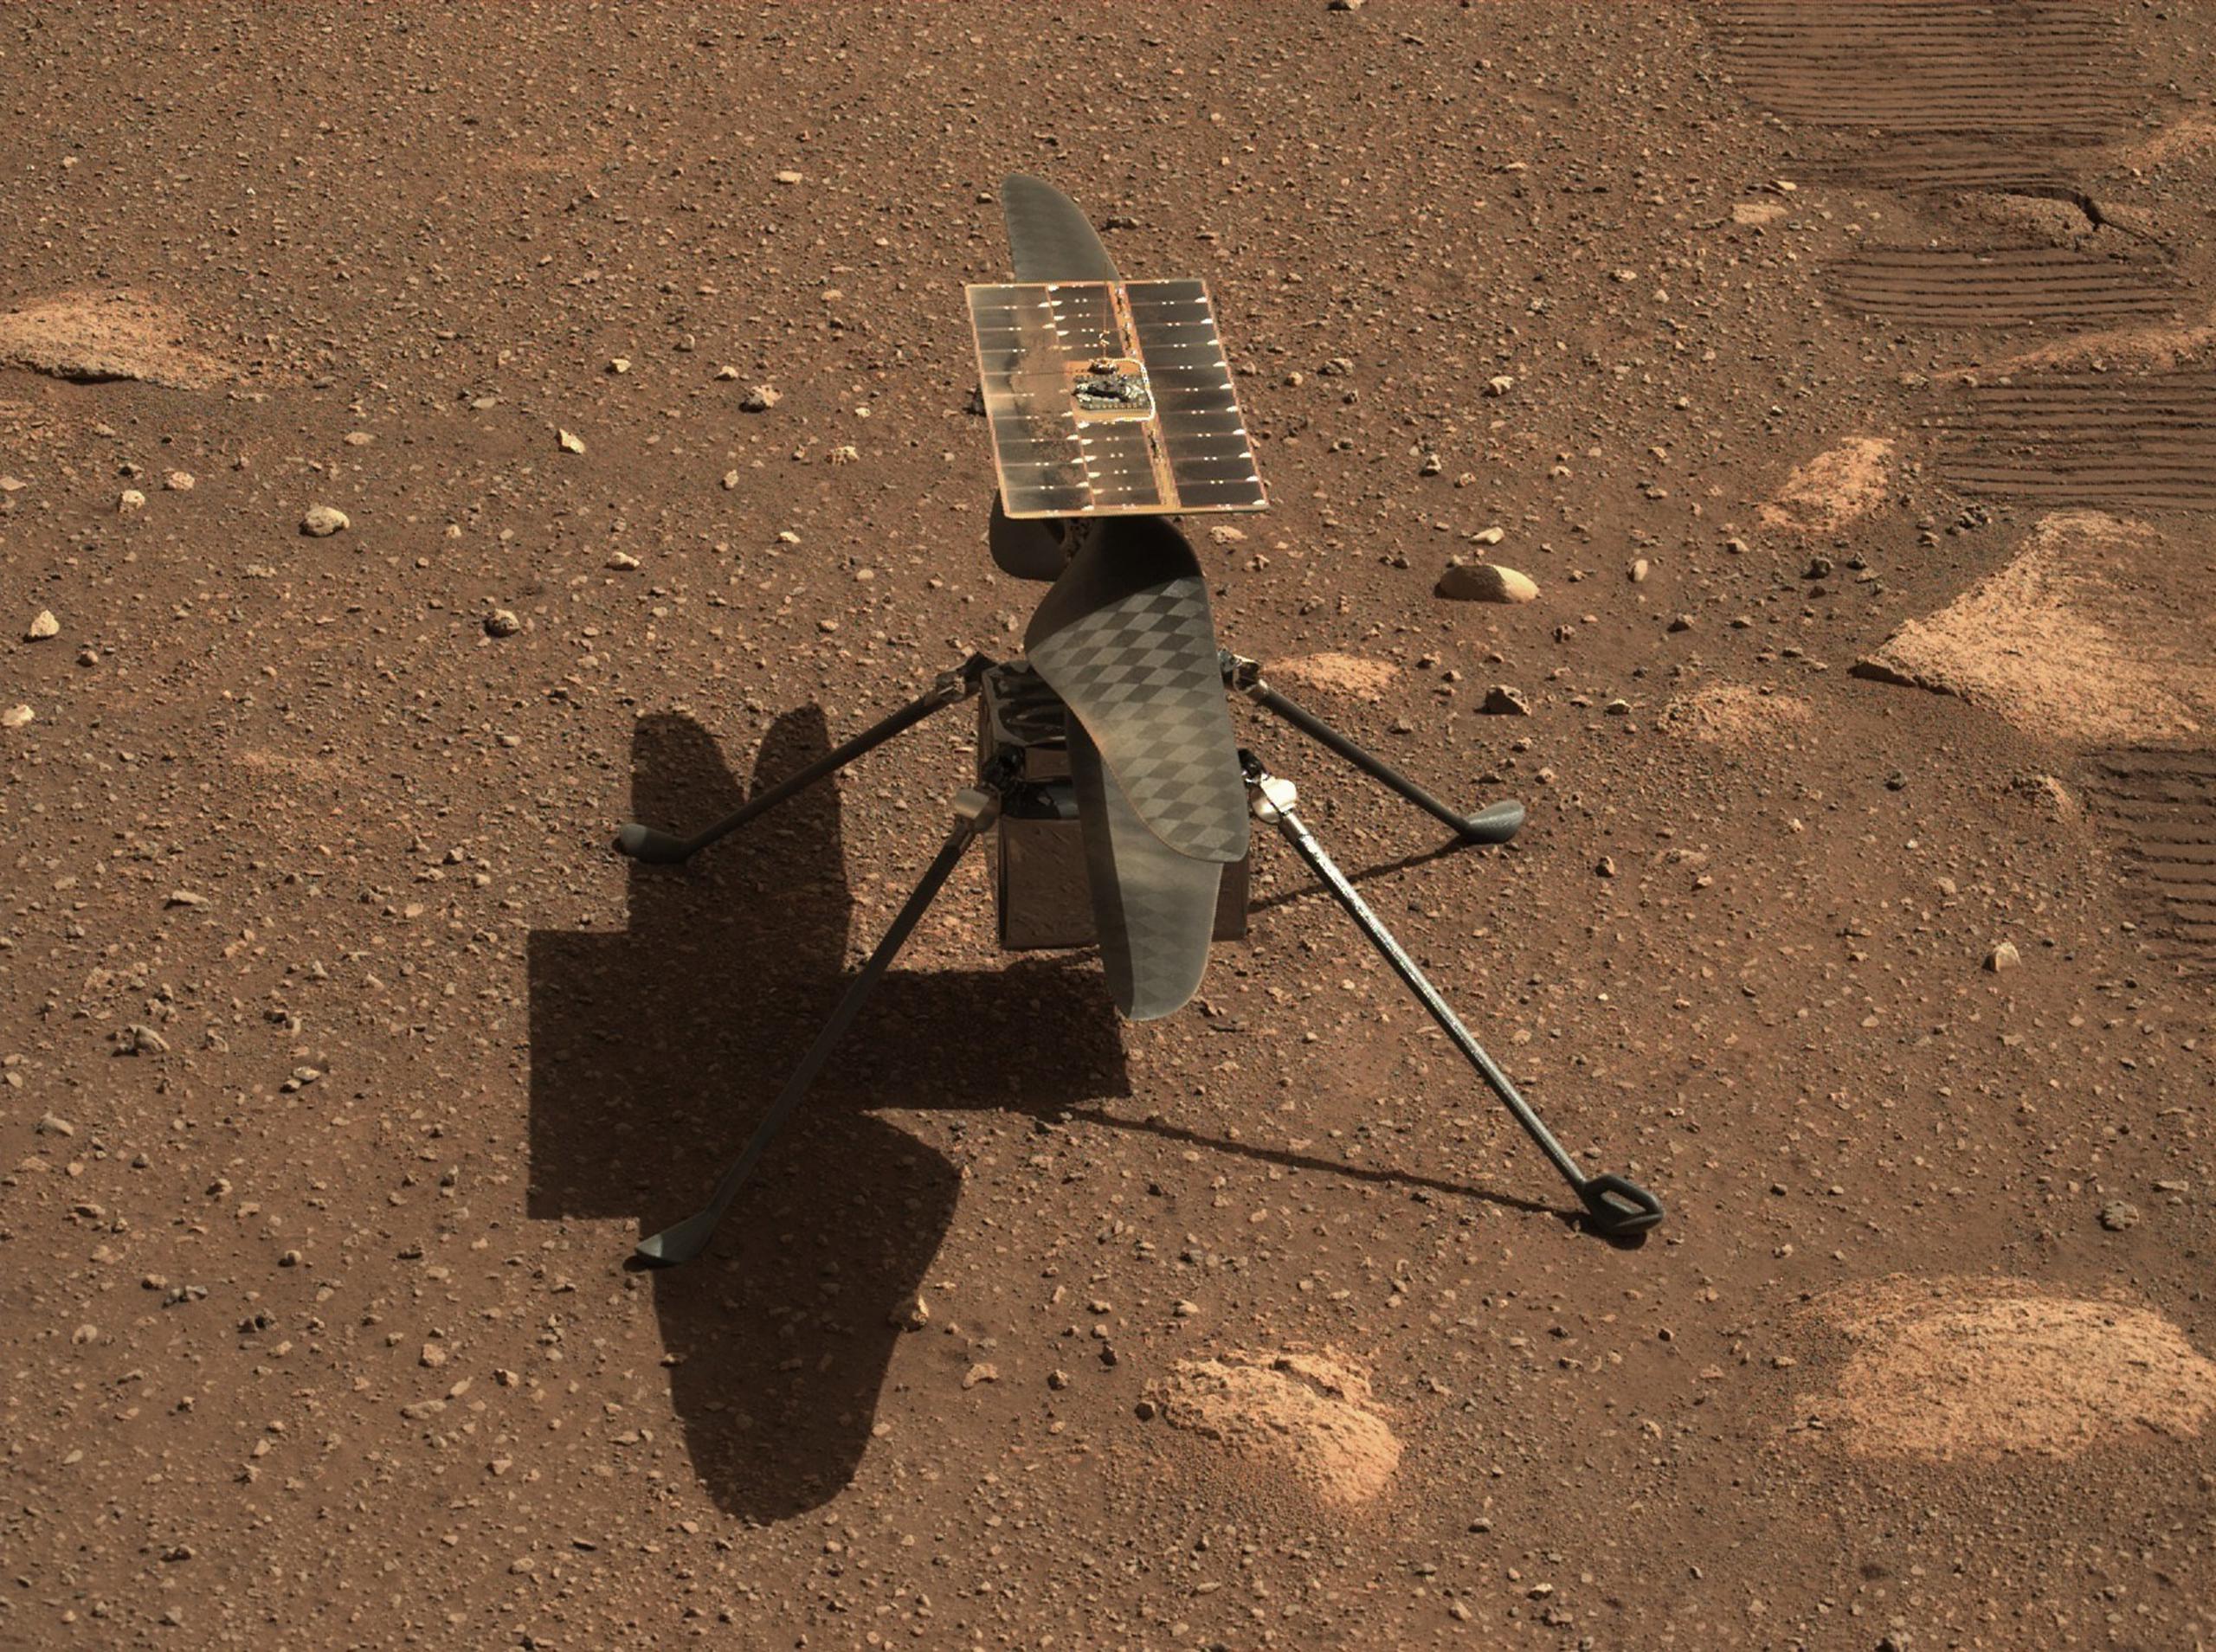 Fotografía cedida por la NASA donde se muestra un primer plano del helicóptero Ingenuity tomado el 5 de abril por Mastcam-Z, un par de cámaras con zoom instaladas a bordo del rover Perseverance en Marte.